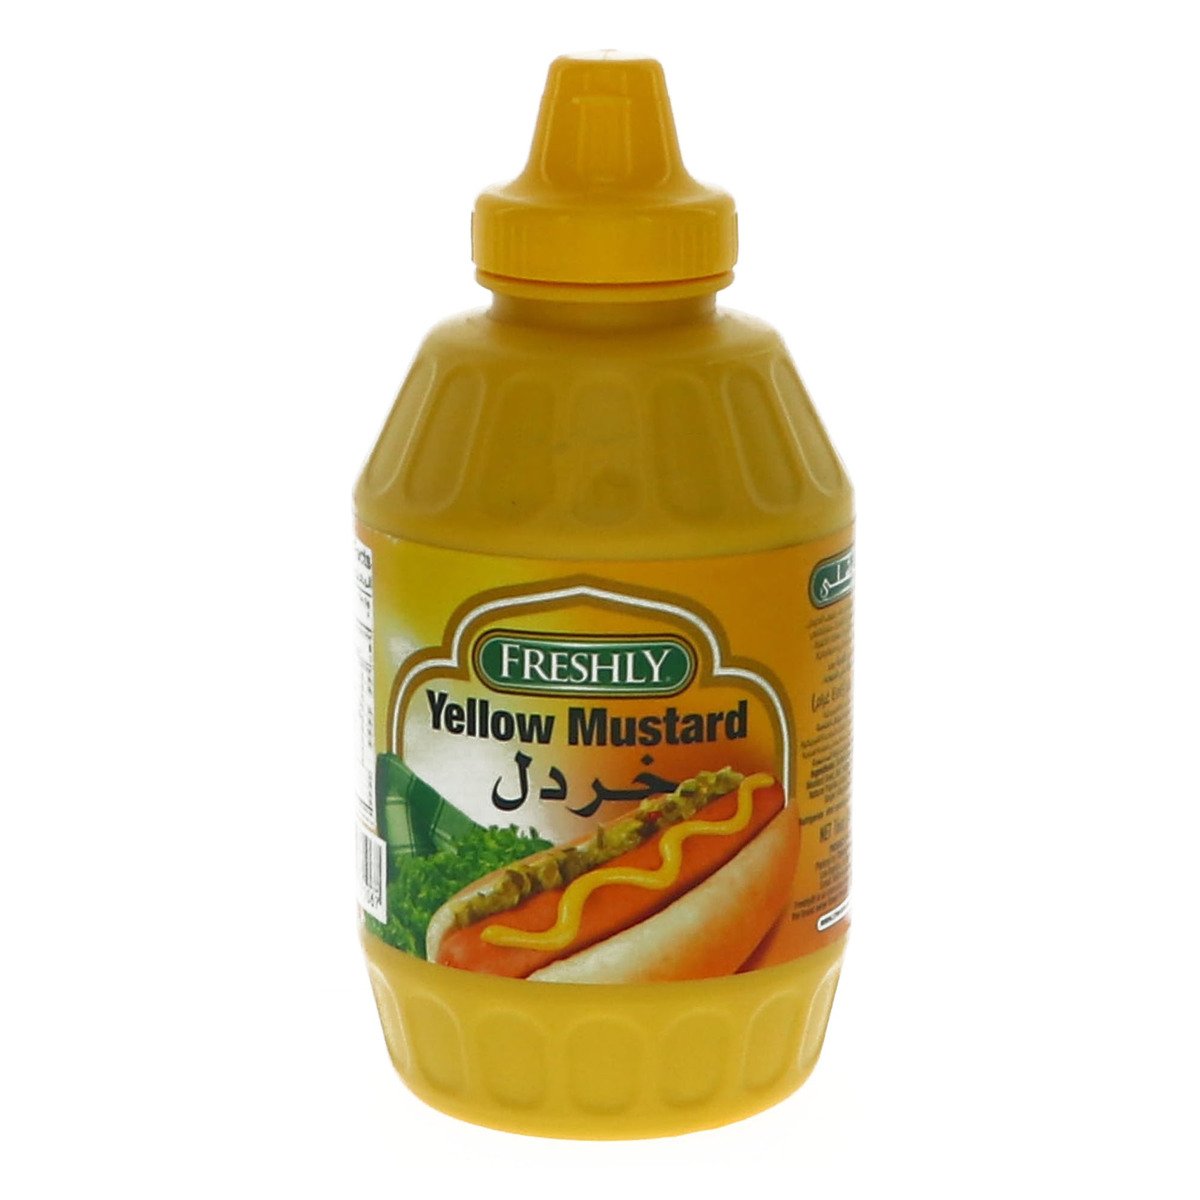 اشتري قم بشراء فرشلي خردل أصفر 6 أونصة Online at Best Price من الموقع - من لولو هايبر ماركت Mustard في السعودية